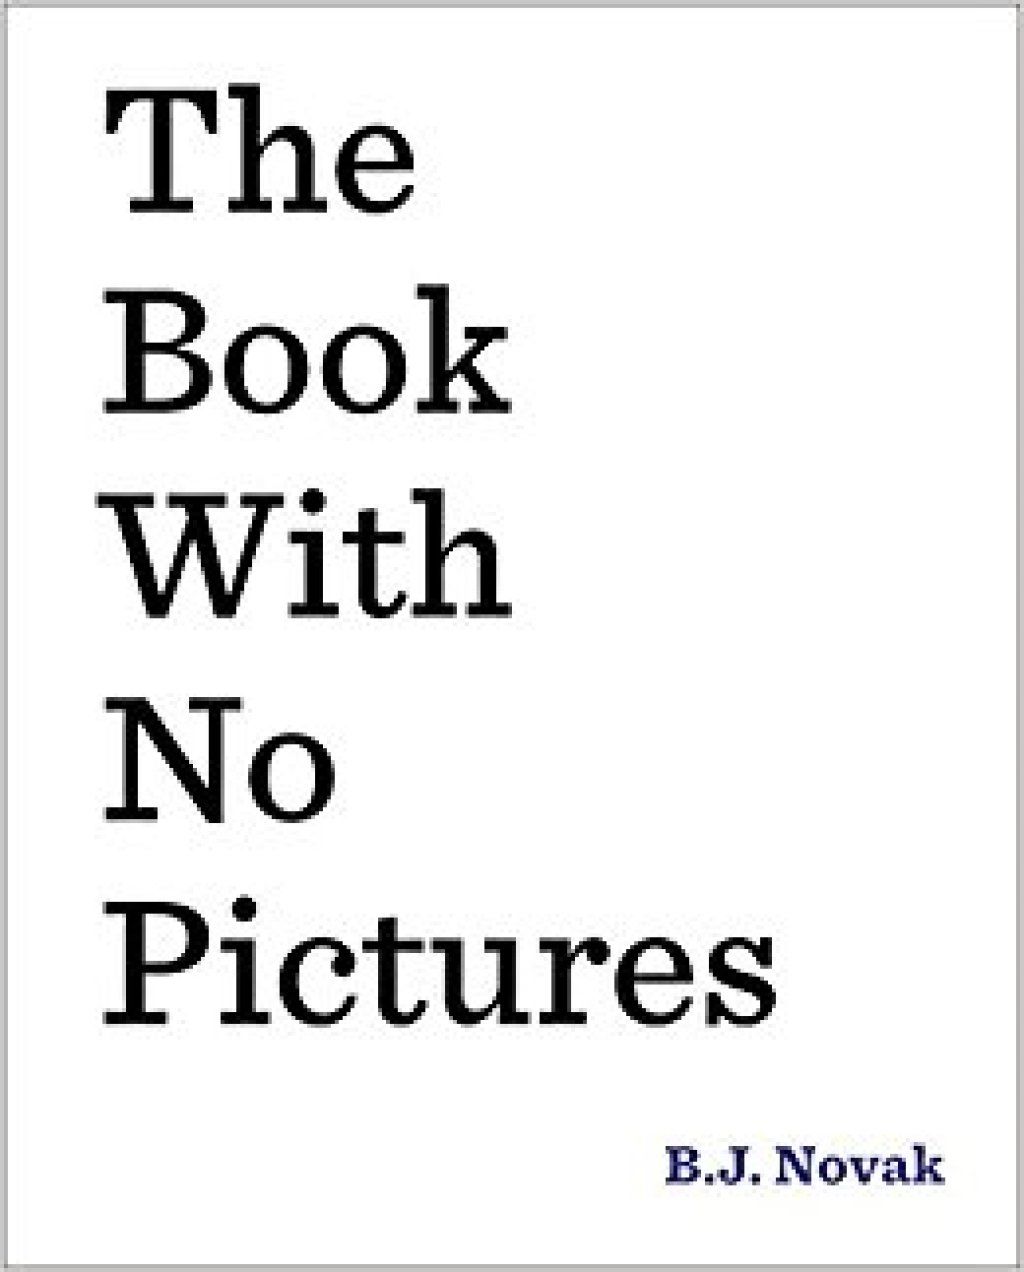 El llibre sense fotos de B.J. Novak, bromes de nens